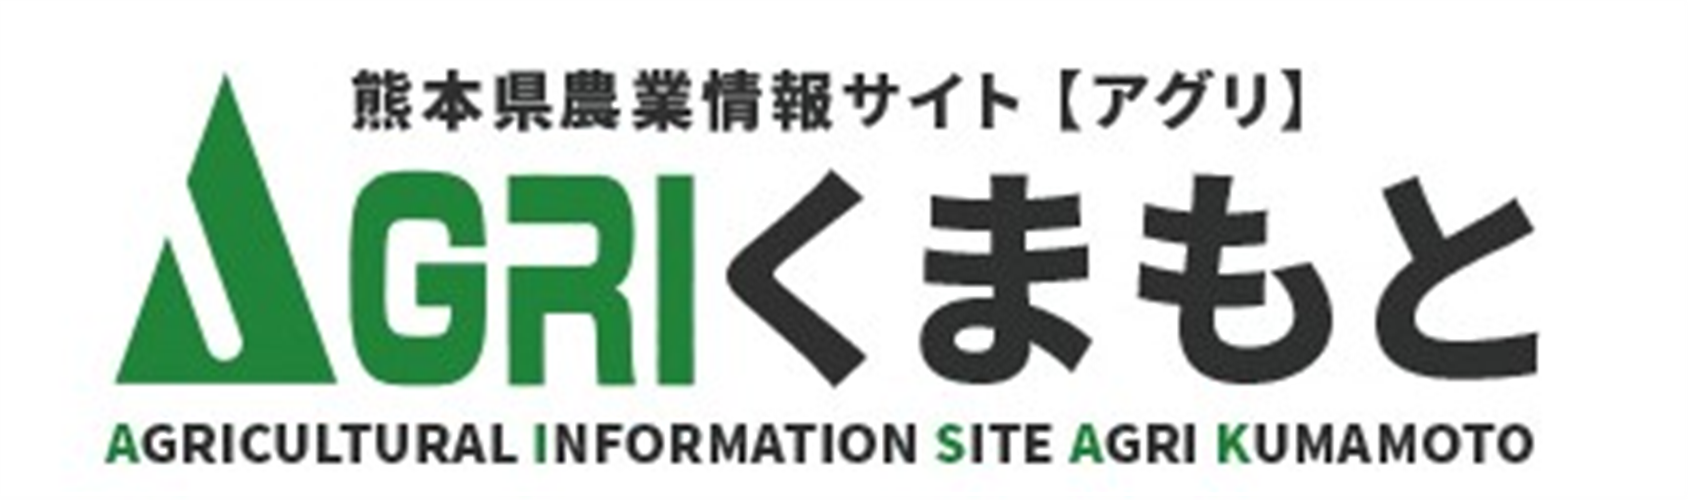 熊本県農業情報サイト「アグリくまもと」について